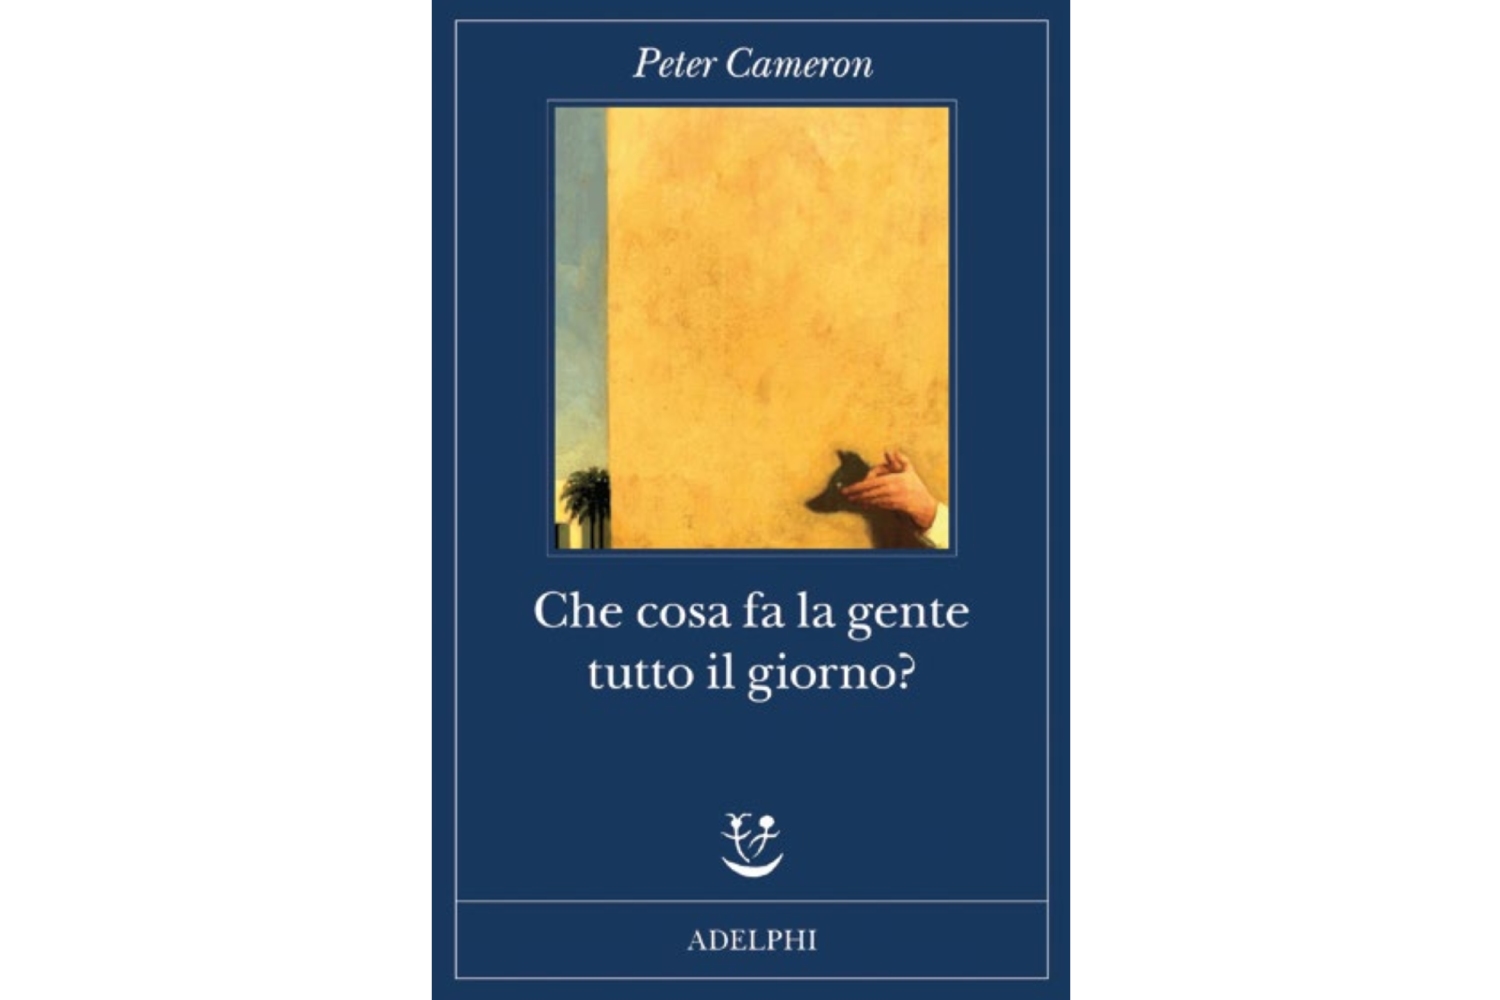 Copertina del libro di Peter Cameron